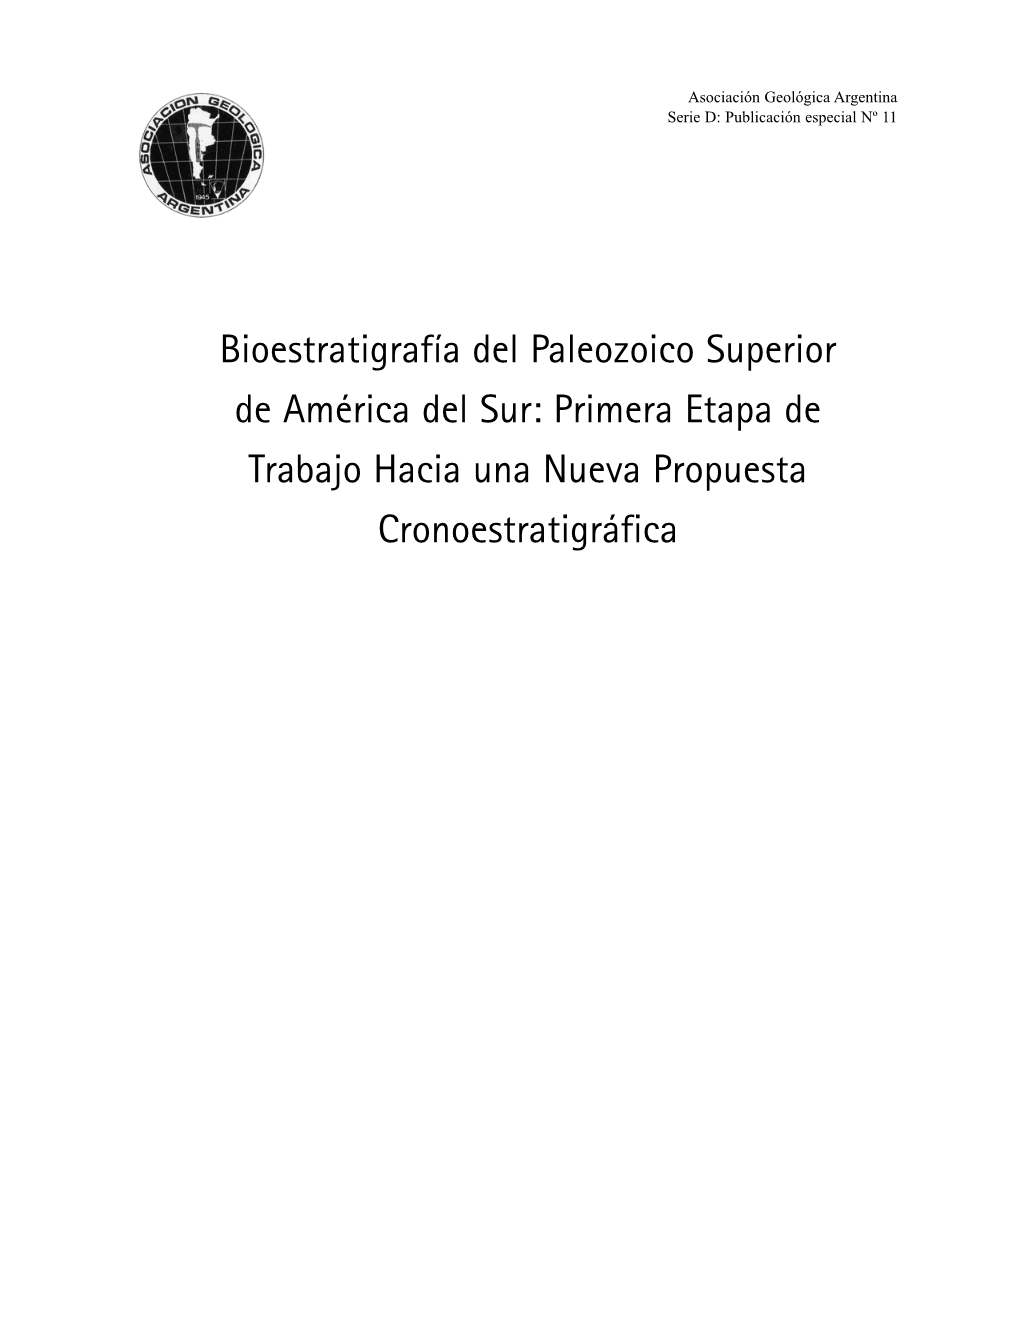 Bioestratigrafía Del Paleozoico Superior De América Del Sur: Primera Etapa De Trabajo Hacia Una Nueva Propuesta Cronoestratigr